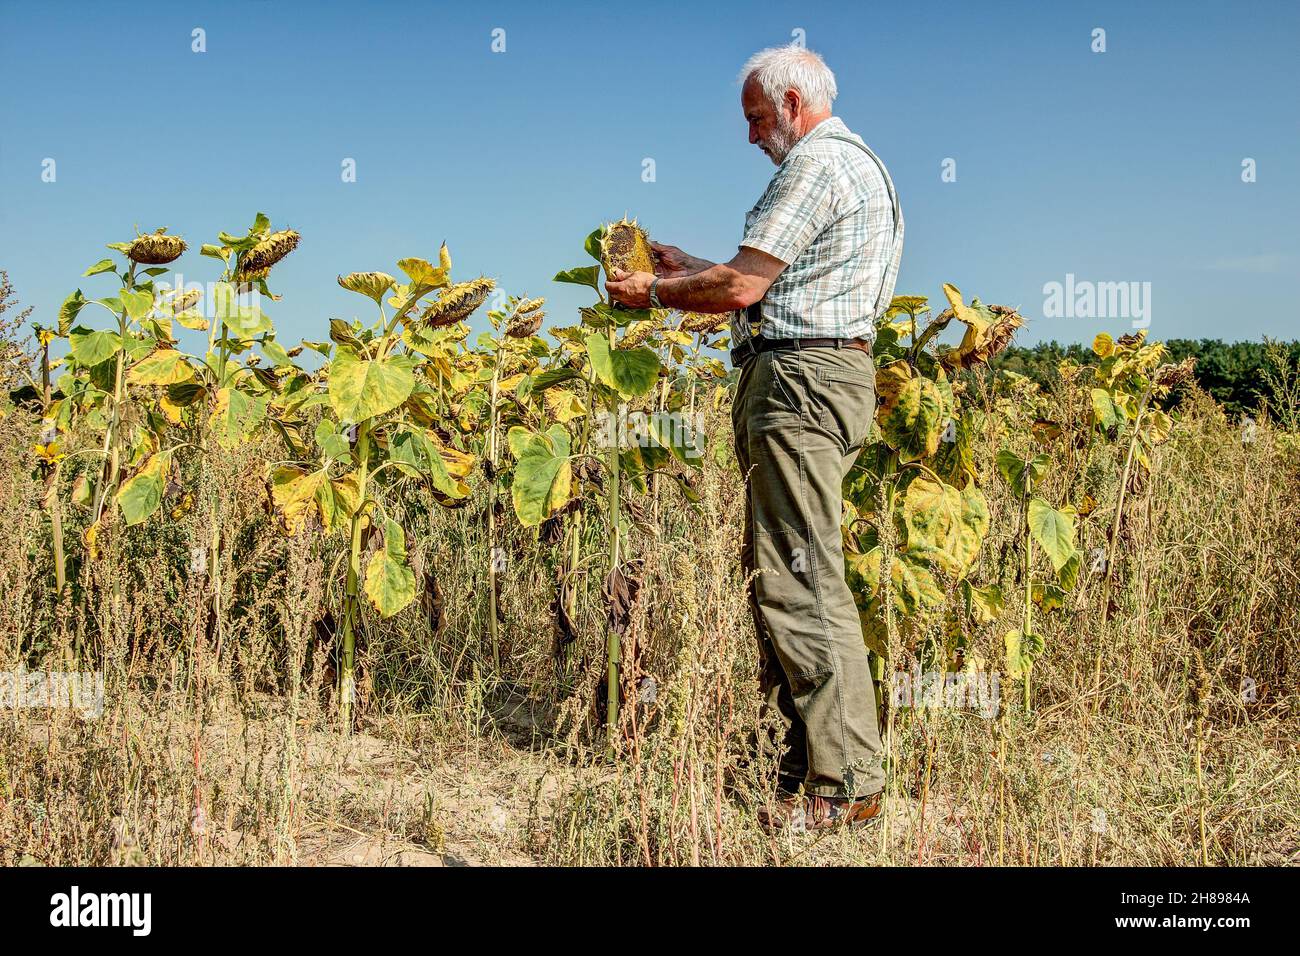 Il vecchio contadino esperto guarda con adorazione i girasoli sul suo campo di pappagallo. Il cambiamento climatico e la mancanza di pioggia stanno rendendo l'agricoltura sempre più mite Foto Stock